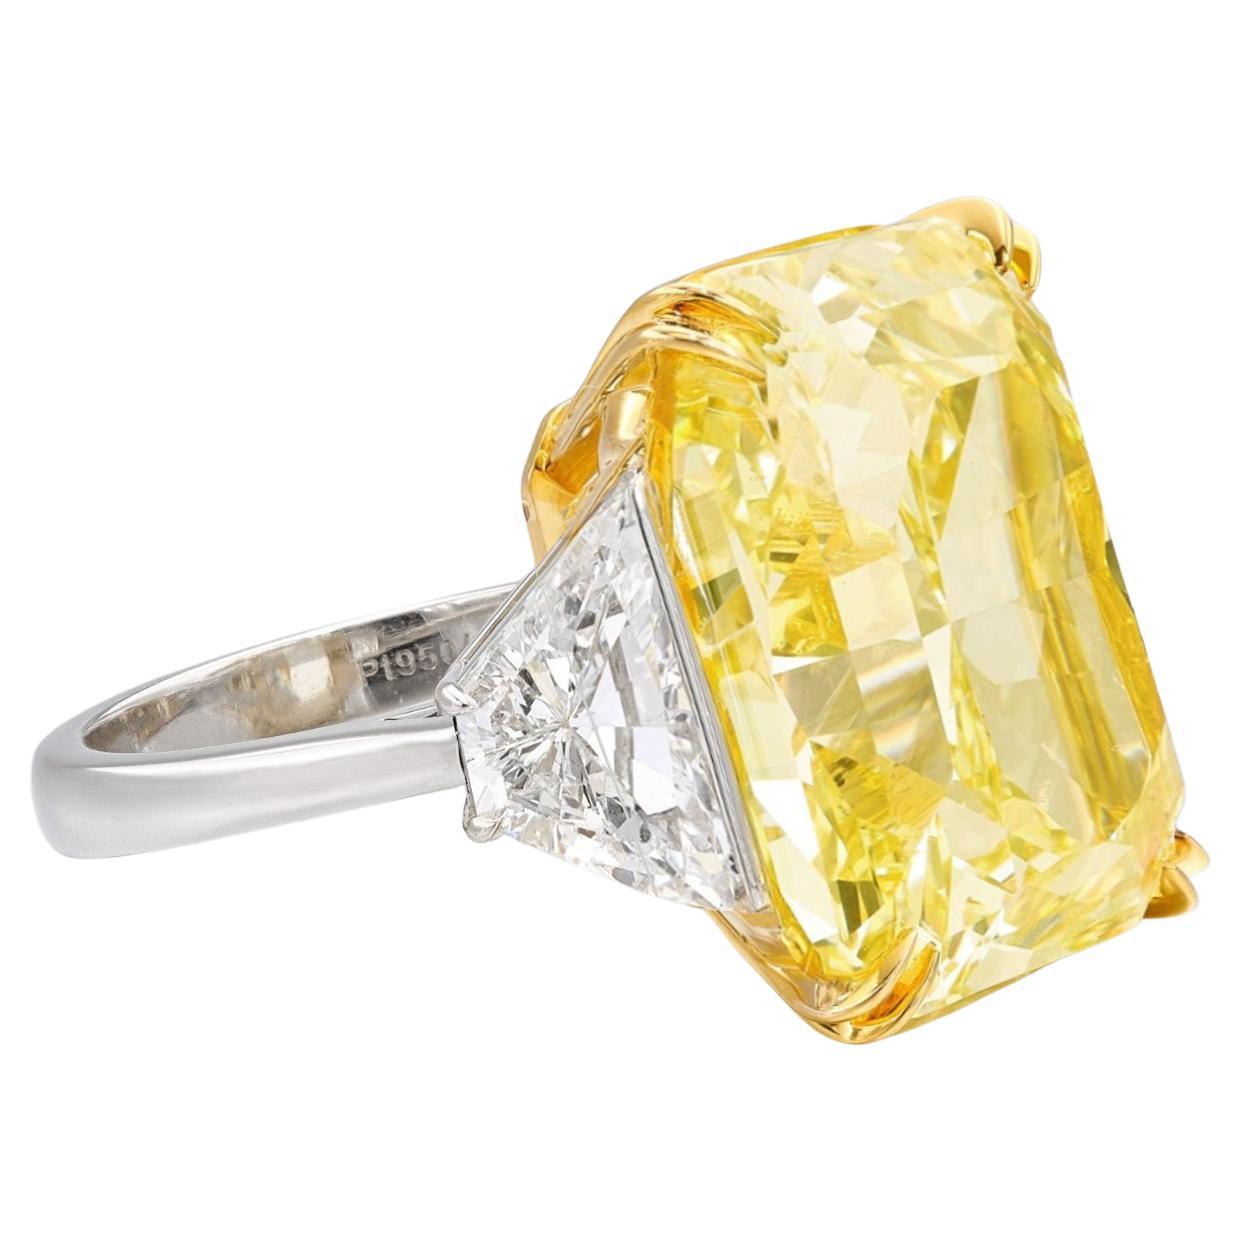 Un luxe inégalé avec notre remarquable diamant certifié GIA de 27 carats à coussin modifié. Dotée d'une teinte jaune fantaisie captivante et d'un degré de pureté IF, cette gemme extraordinaire rayonne de brillance et de sophistication.